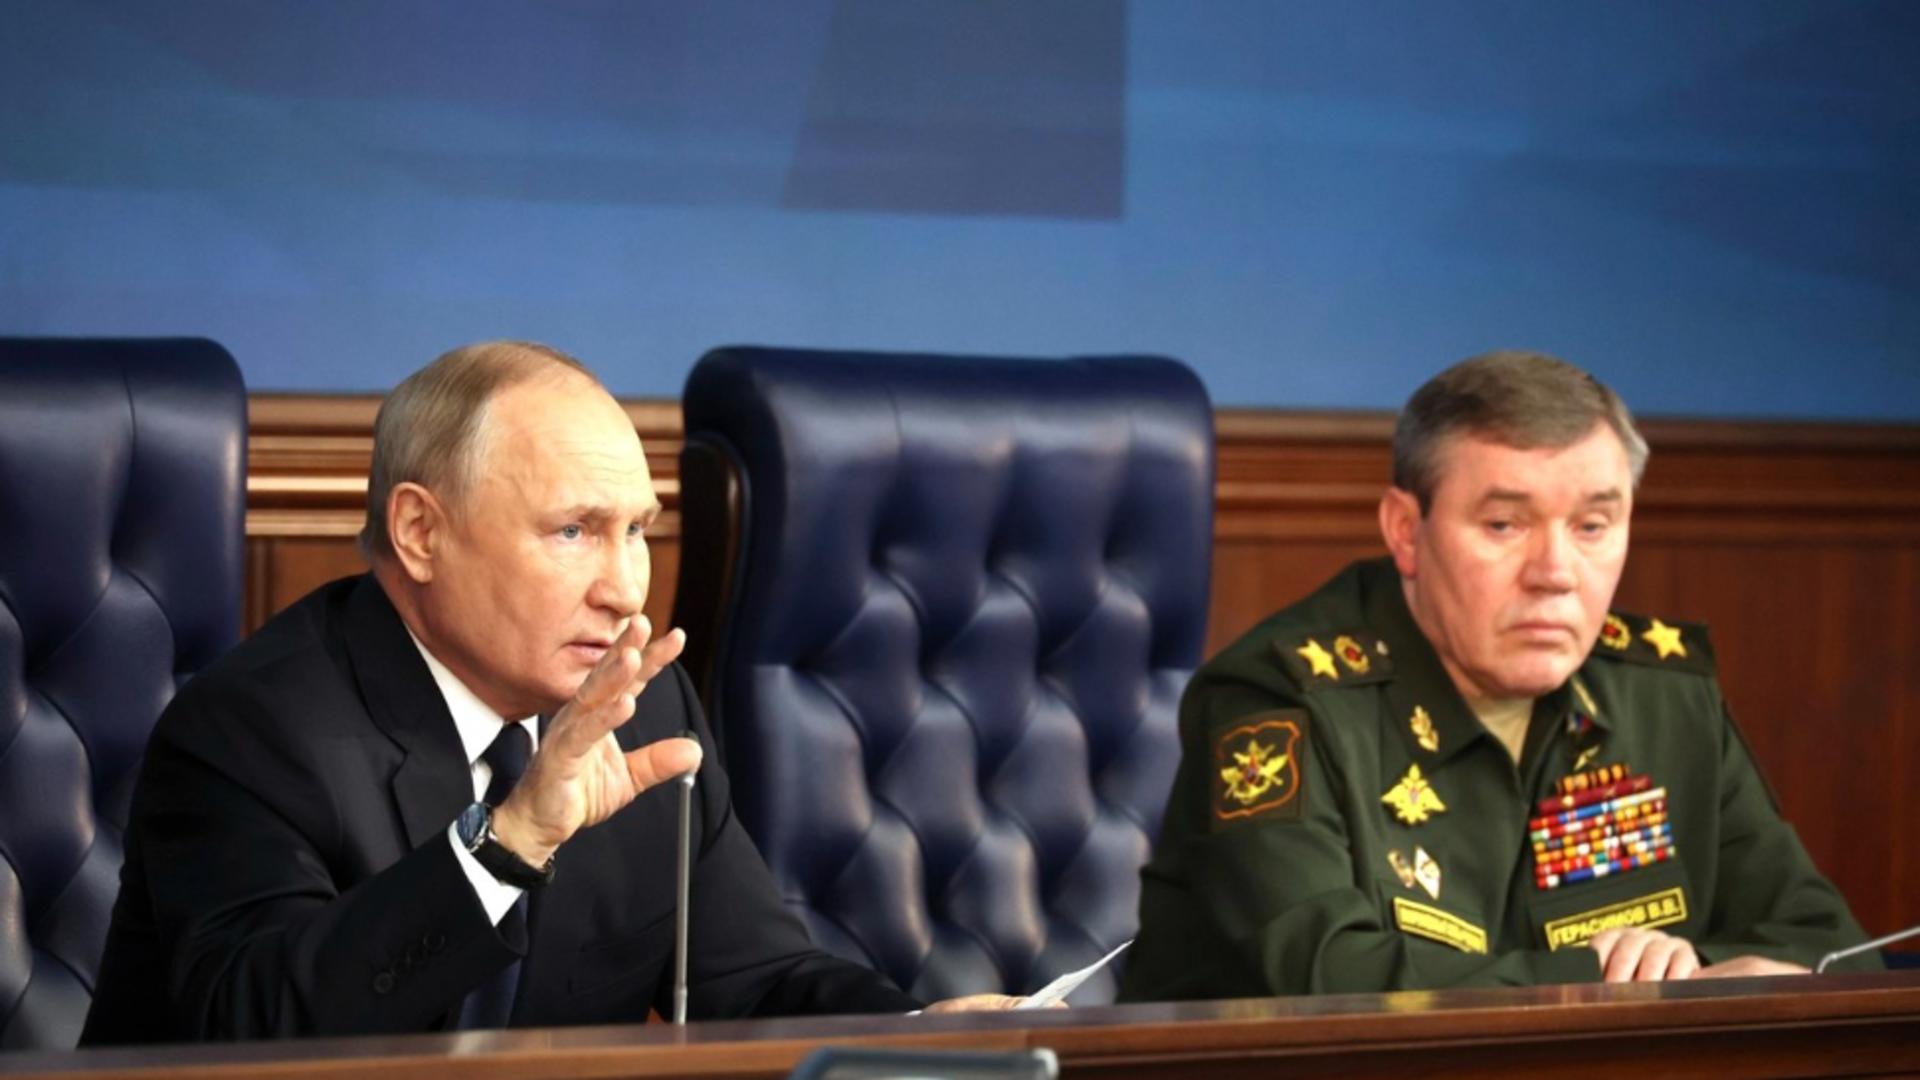 Generalul a coordonat operațiunile din Ucraina, dar a fost demis de Putin (Profimedia)